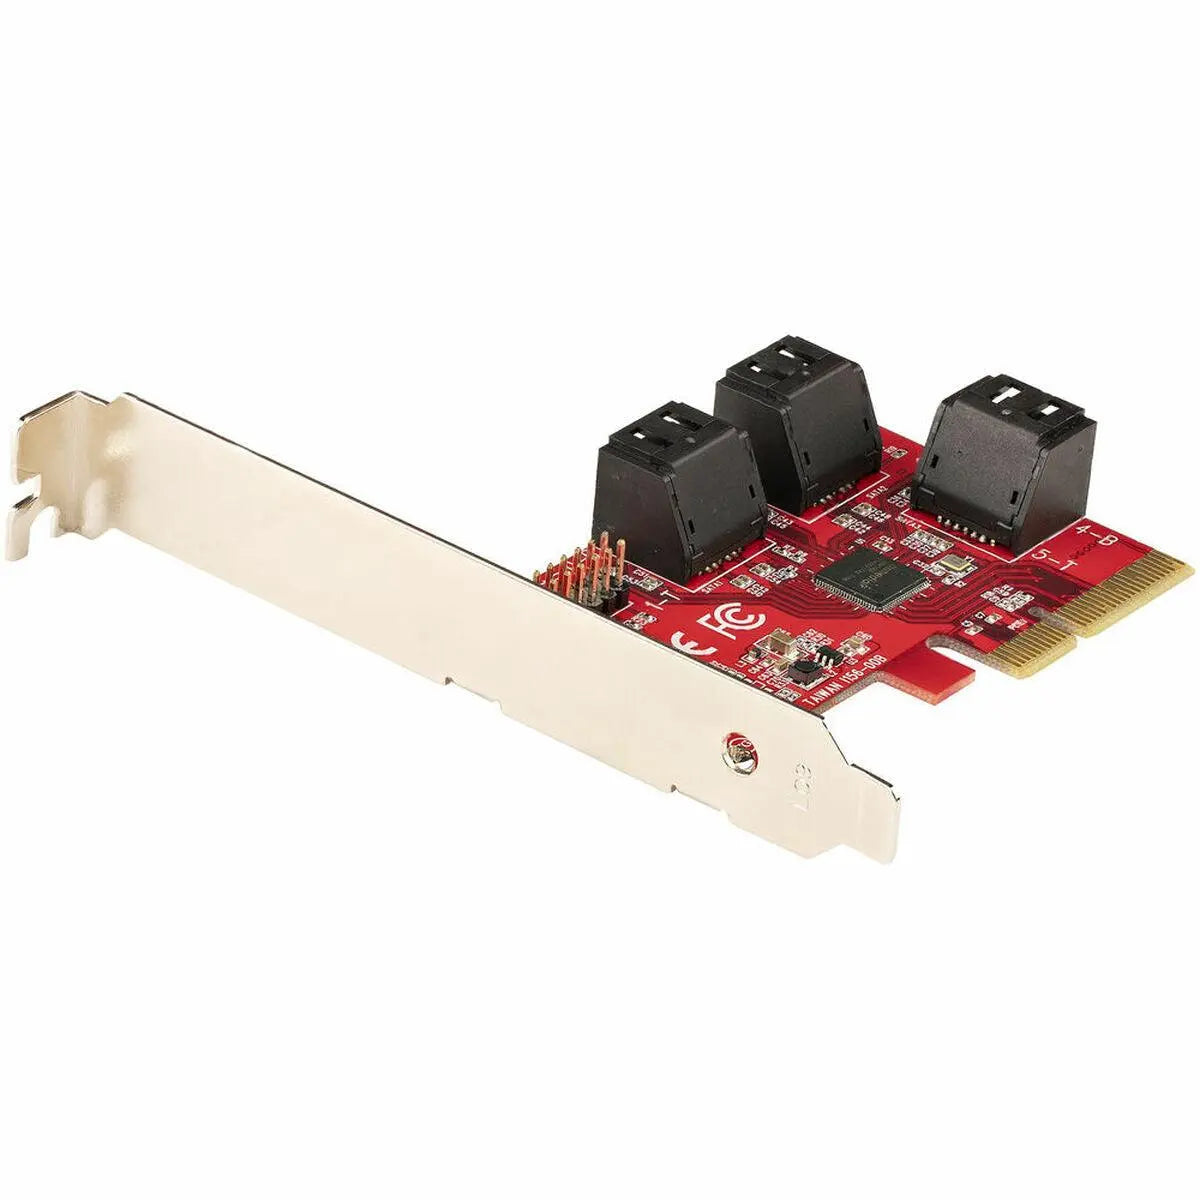 RAID controller card 6P6G-PCIE-SATA-CARD - IGSI Europe Ltd